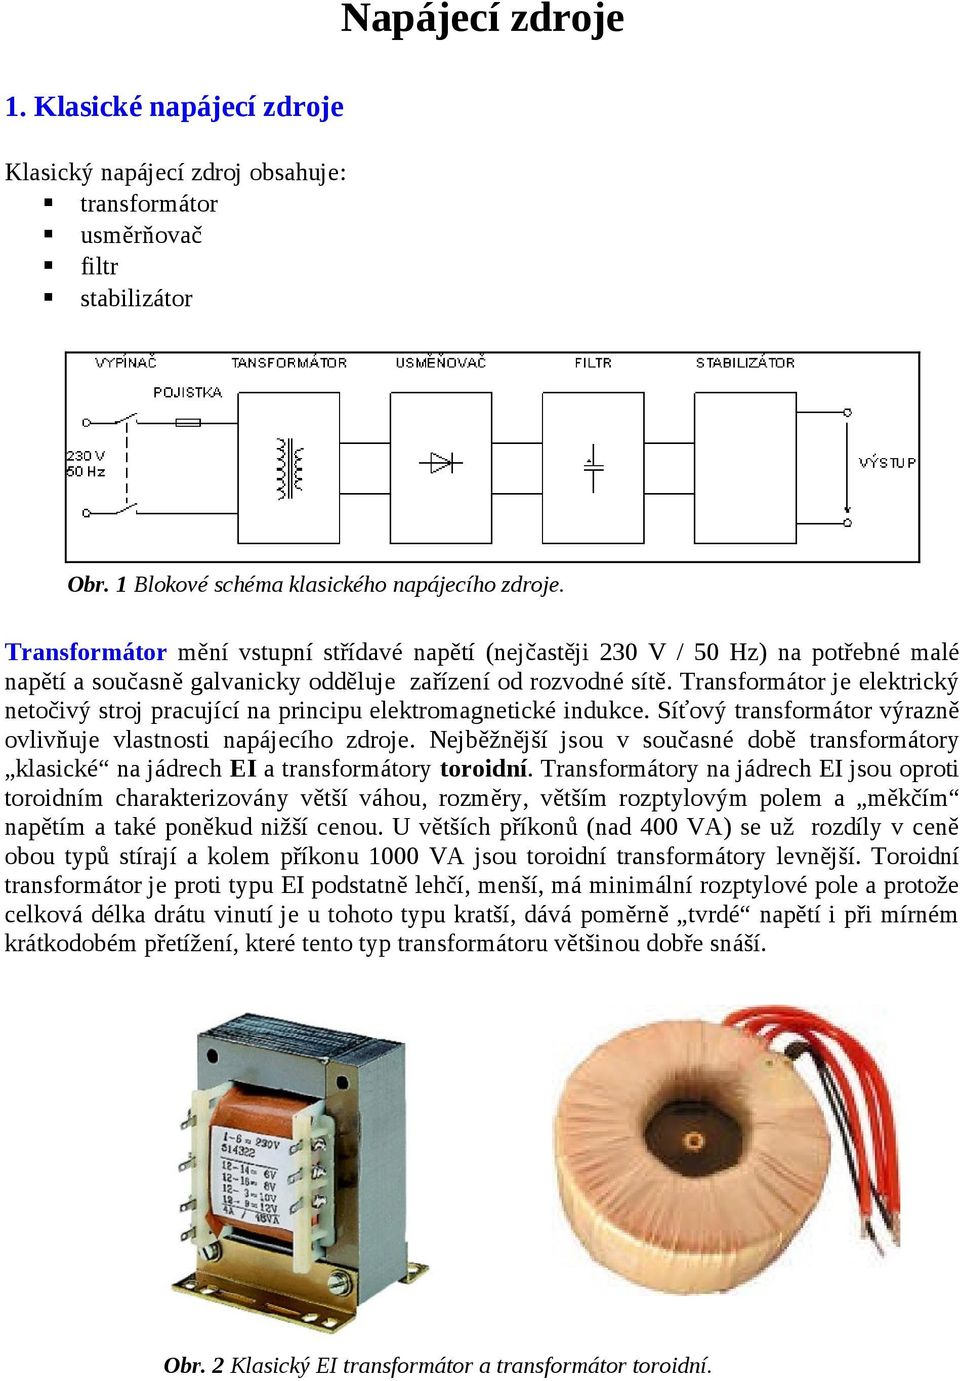 Transformátor je elektrický netočivý stroj pracující na principu elektromagnetické indukce. Síťový transformátor výrazně ovlivňuje vlastnosti napájecího zdroje.